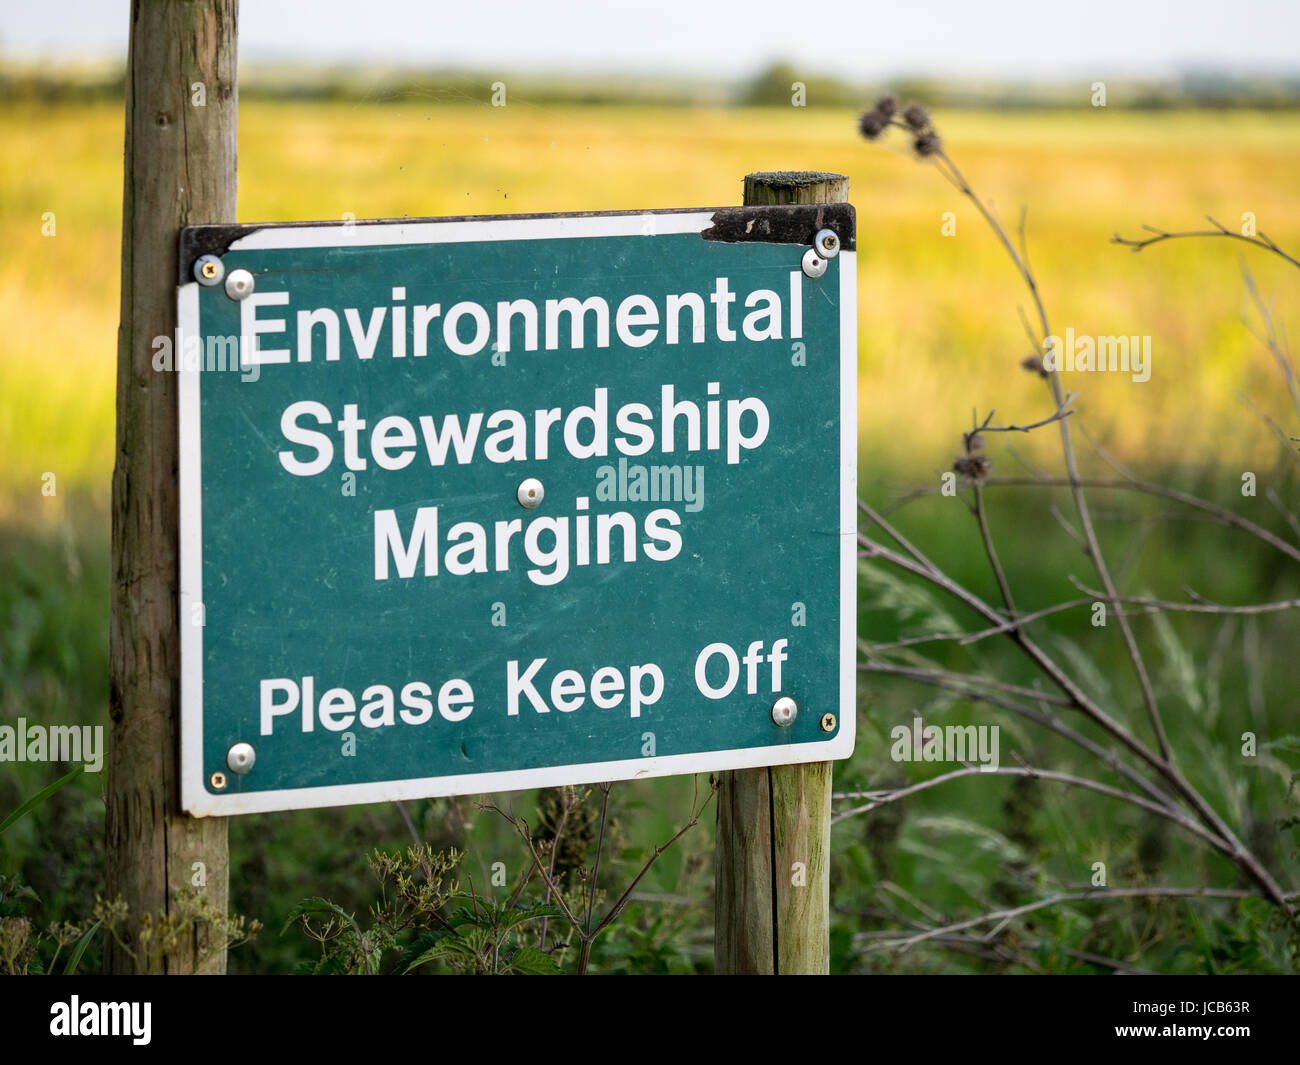 Panneau indiquant les marges de champs sont gérées pour le bénéfice de la faune et l'environnement en vertu des règles de l'UE/Defra Banque D'Images